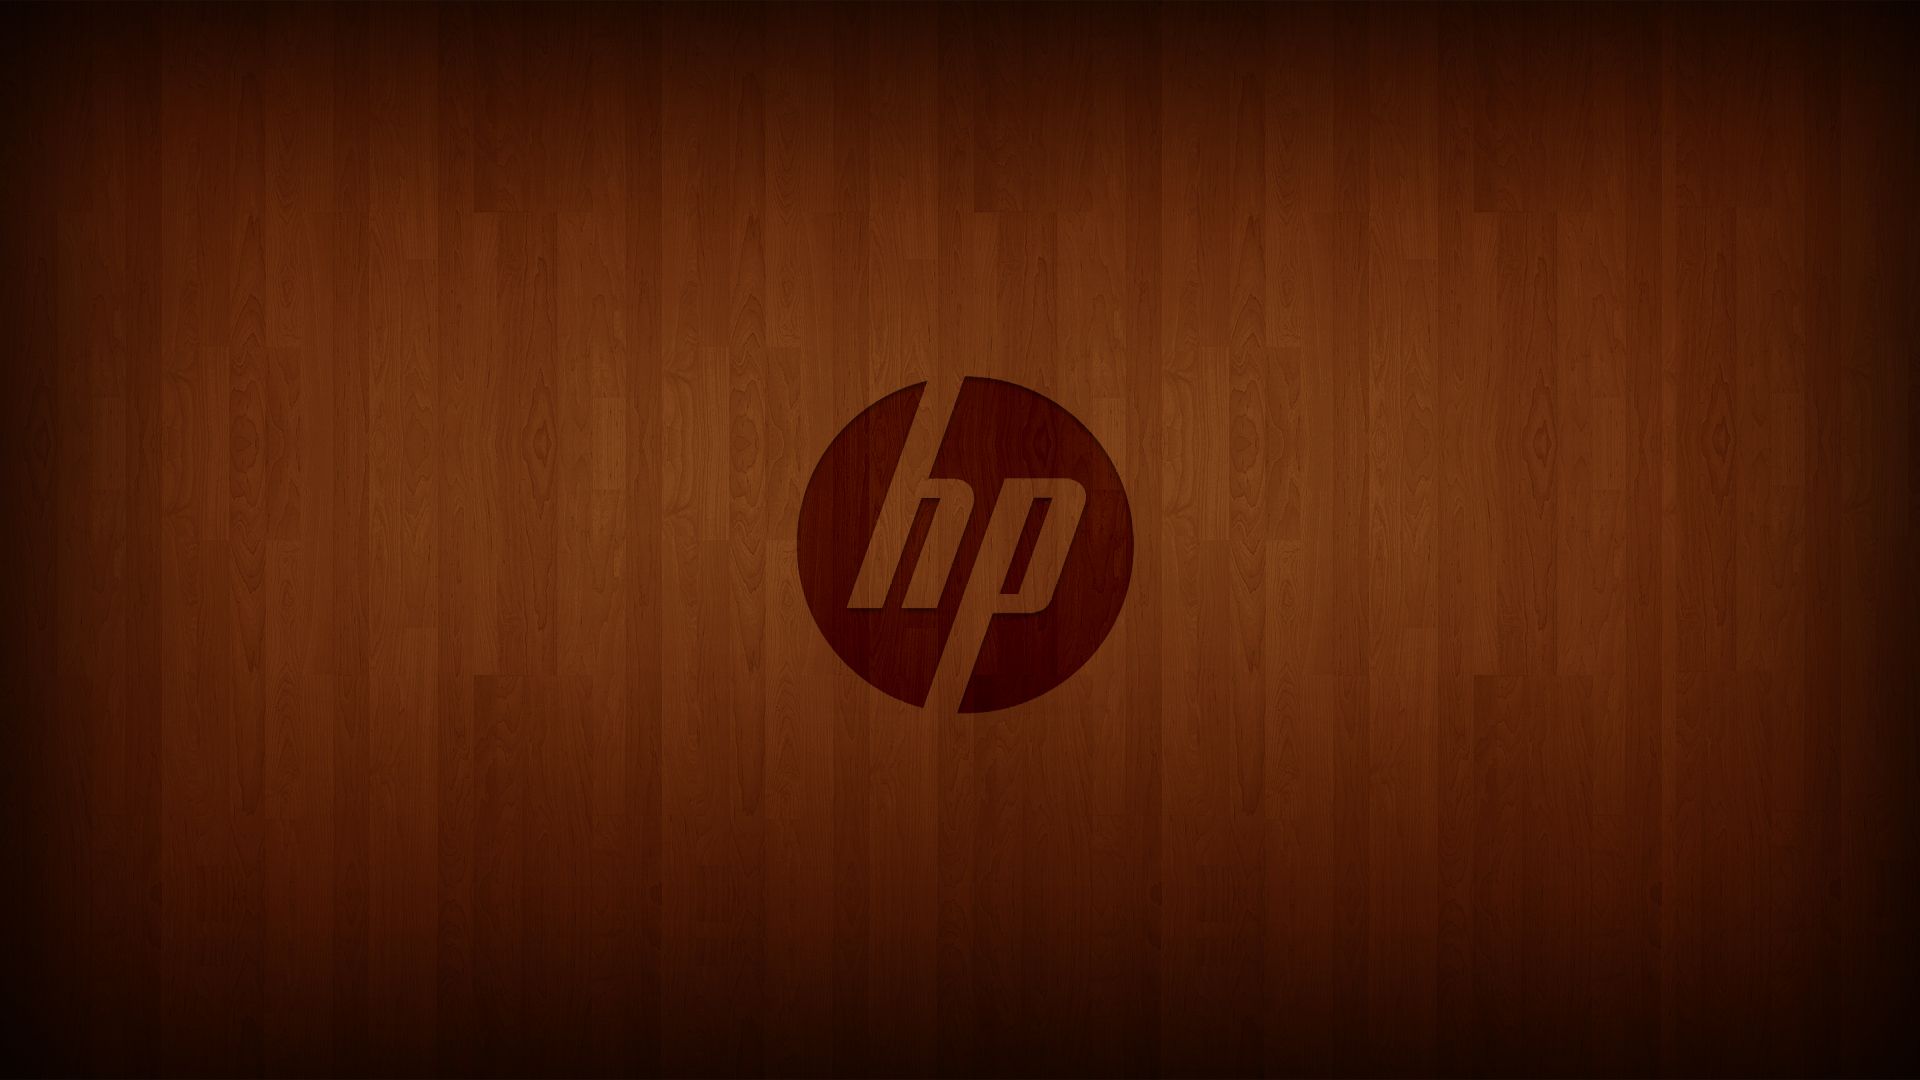 Năm 2019 đang tới, bạn muốn làm mới phong cách của mình bằng những hình nền laptop HP? Đến với chúng tôi để tải miễn phí những hình nền mới nhất dành cho laptop HP, giúp bạn trở thành người đầu tiên có được những hình nền độc đáo và đẹp nhất.